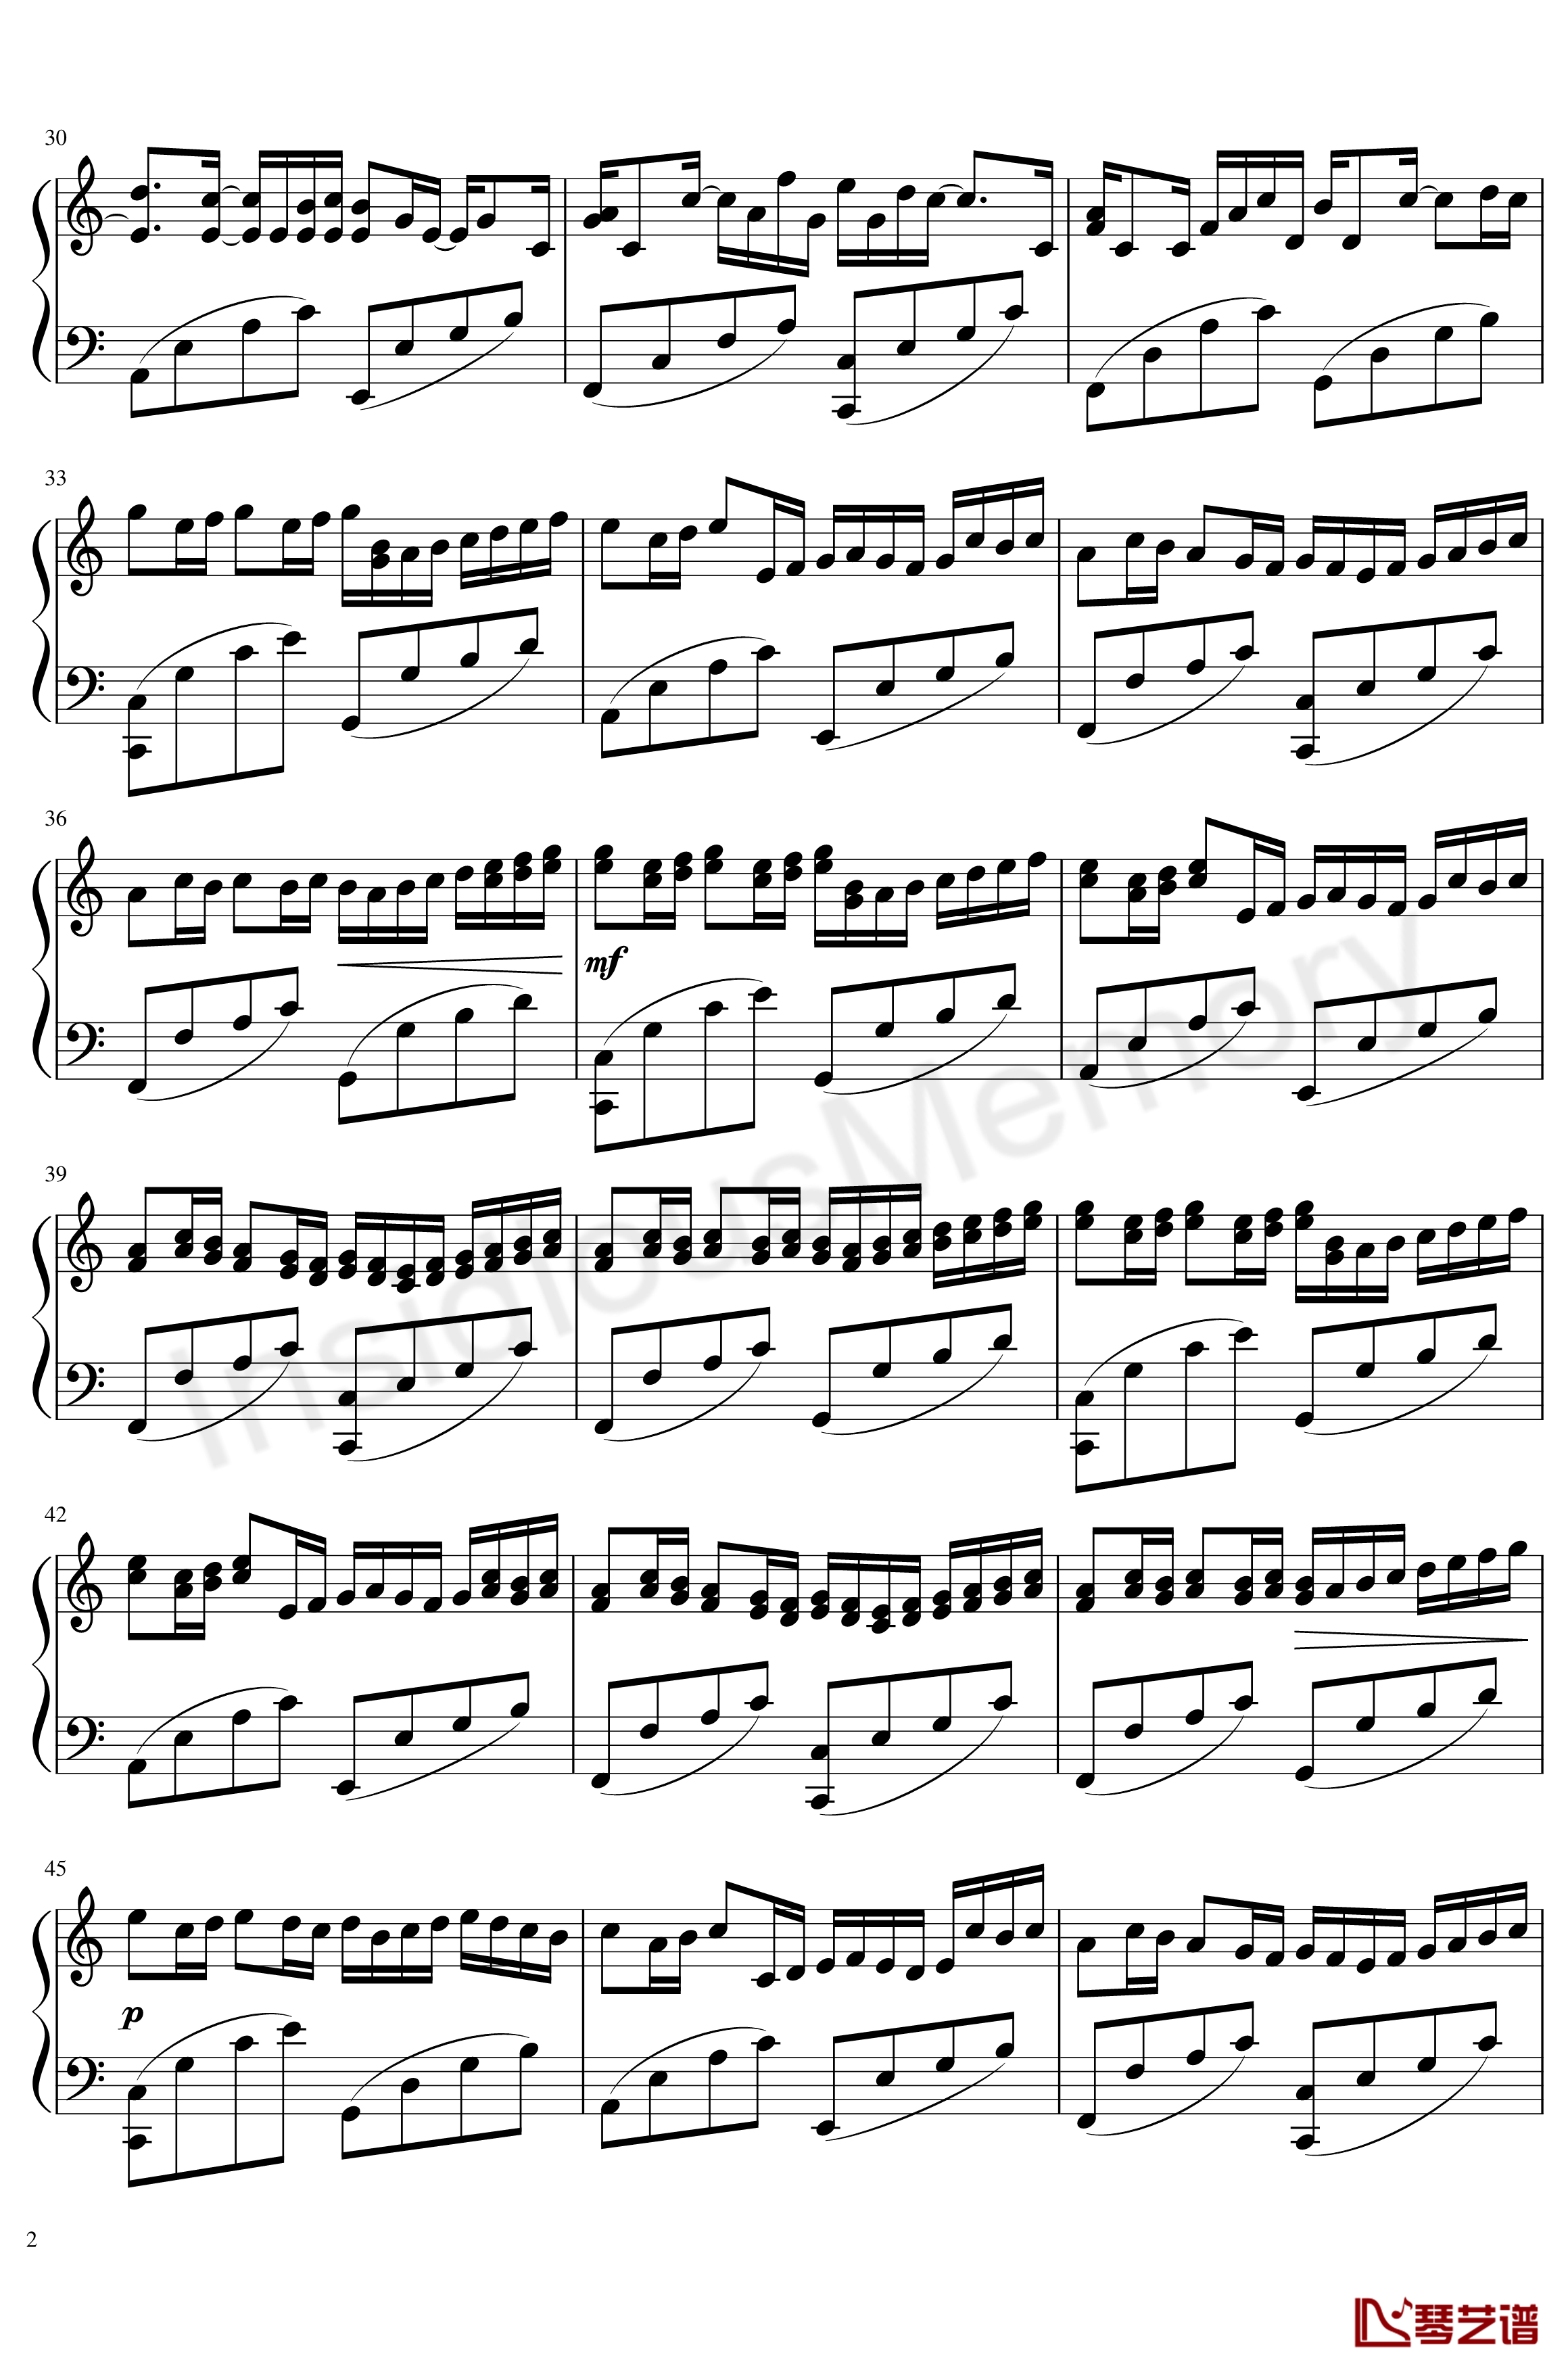 卡农变奏曲钢琴谱-Variations on the Canon-帕赫贝尔-Pachelbel